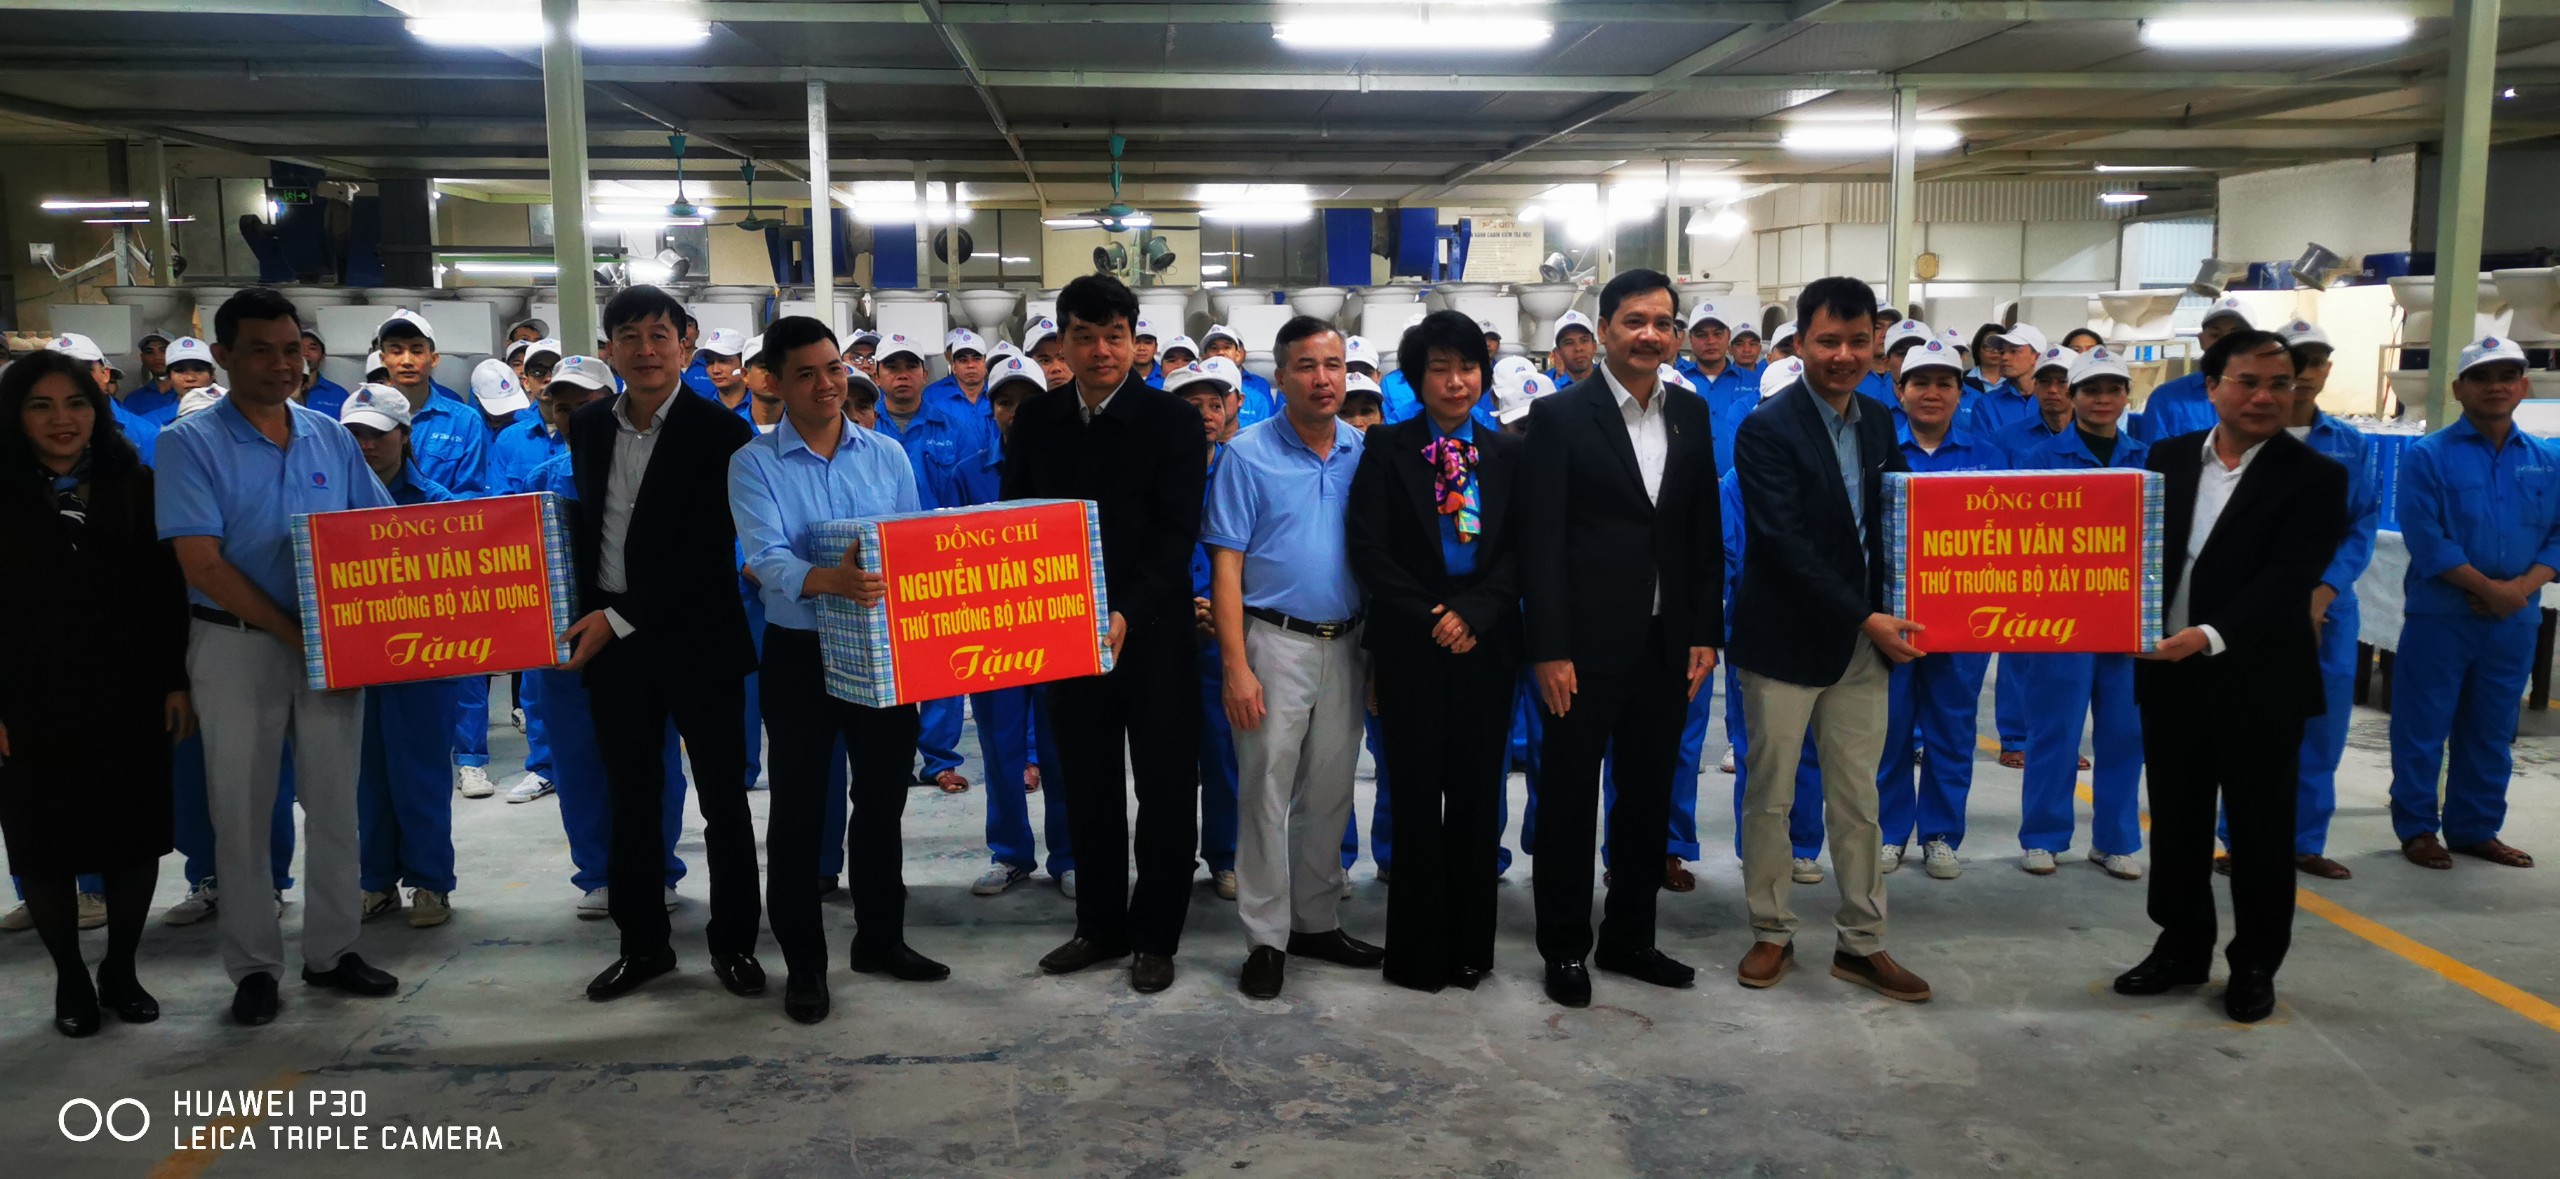 Thứ trưởng Bộ Xây dựng Nguyễn Văn Sinh, Lãnh đạo CĐXDVN thăm, tặng quà người lao động